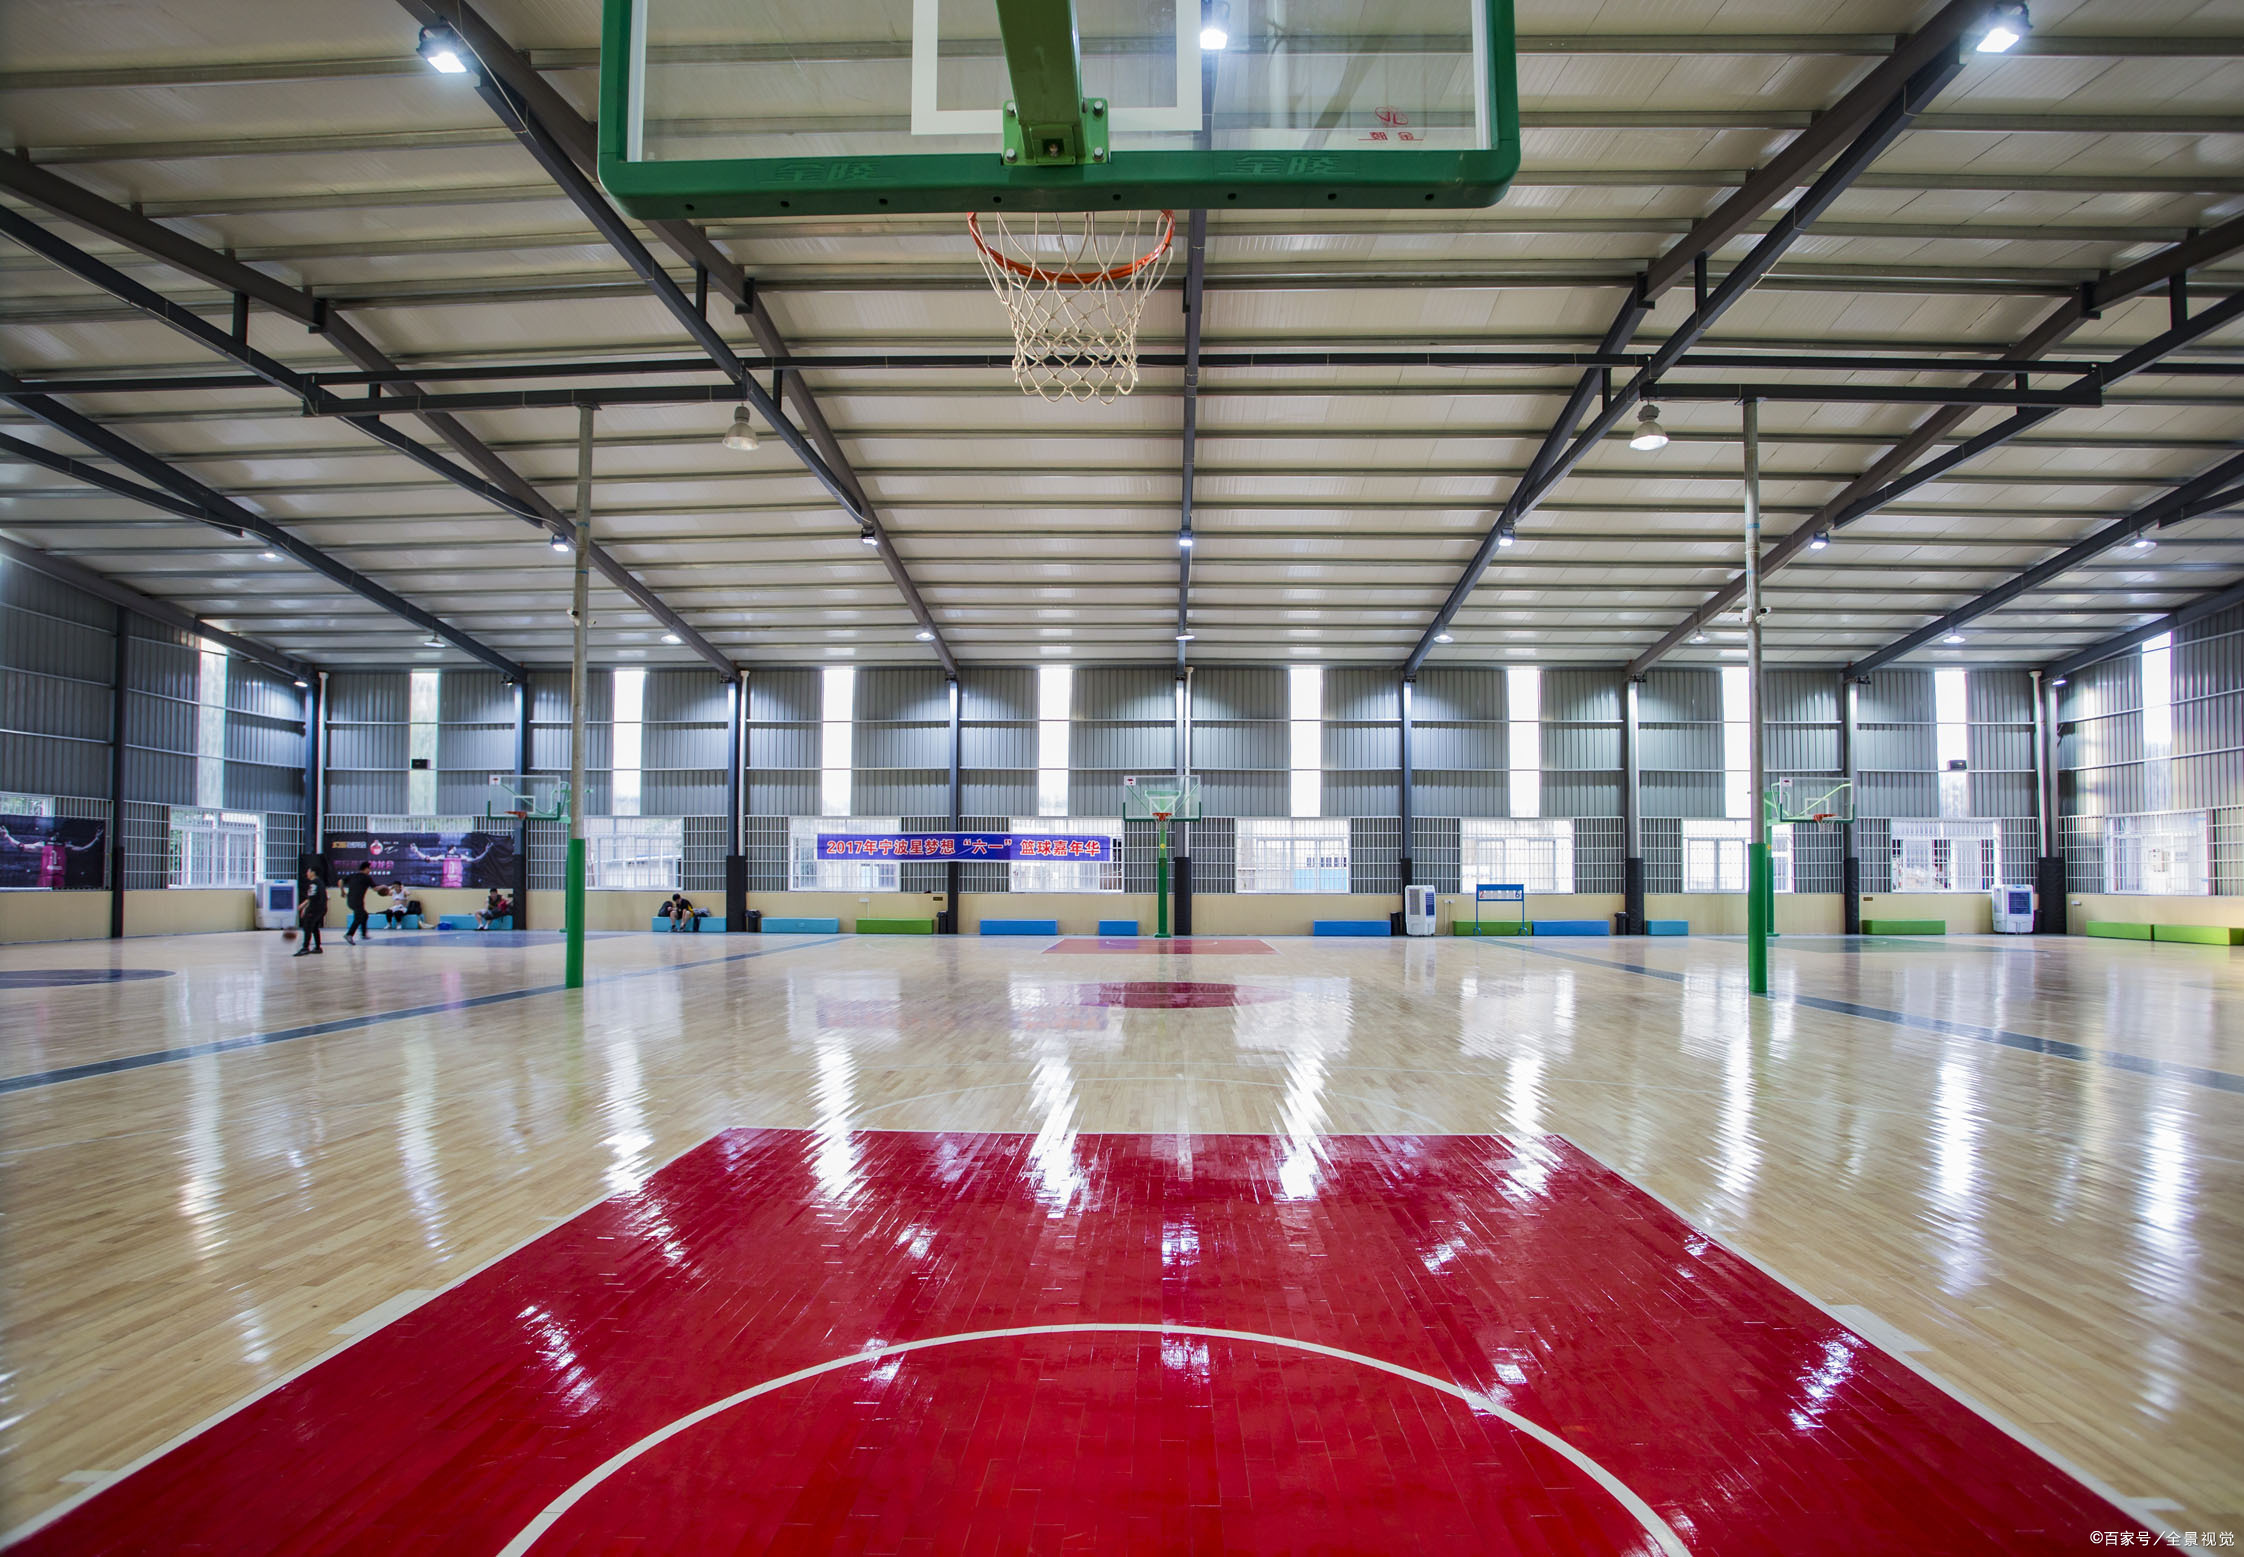 福州室内篮球场图片